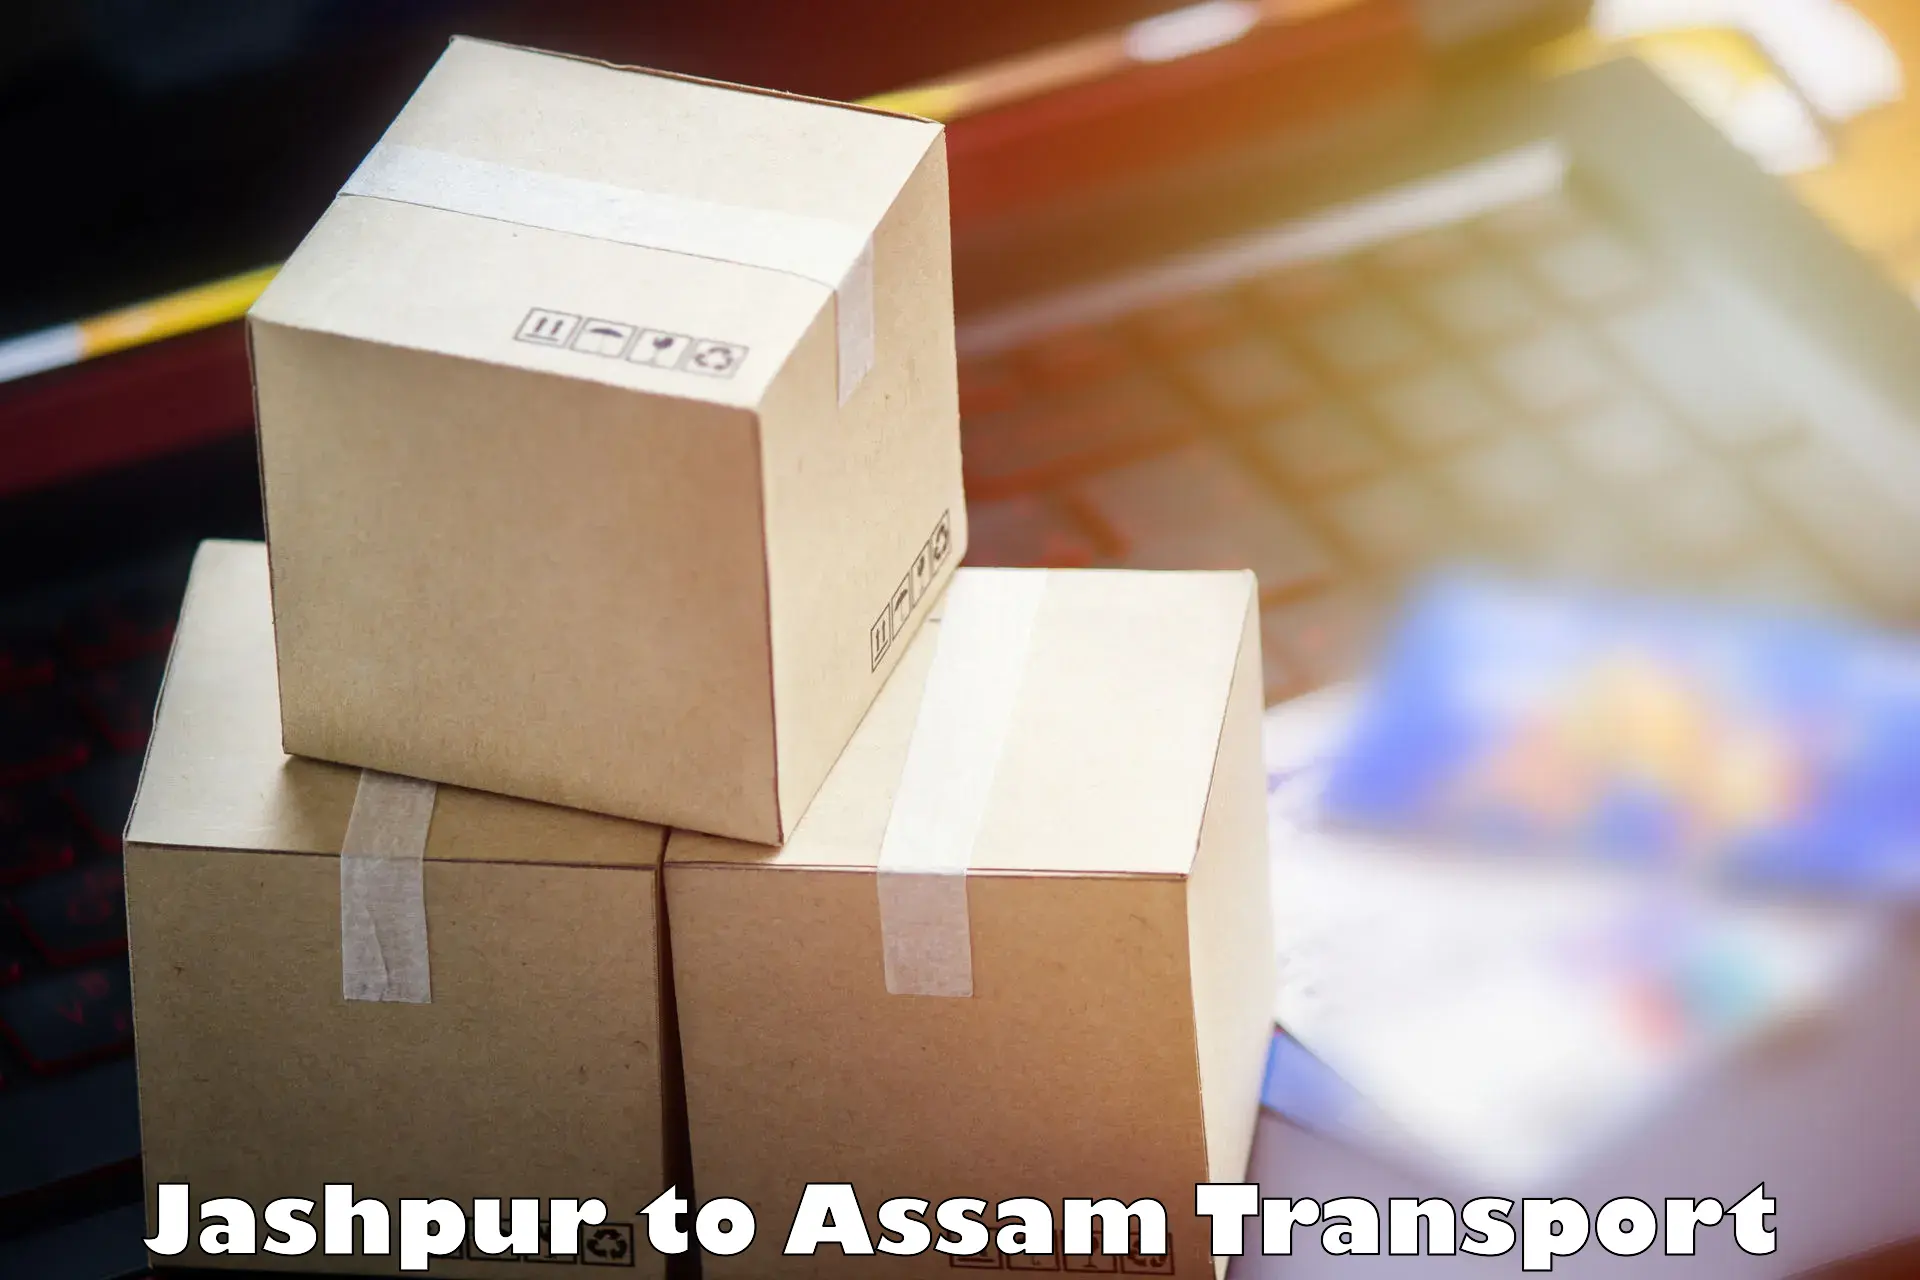 Two wheeler parcel service Jashpur to Assam